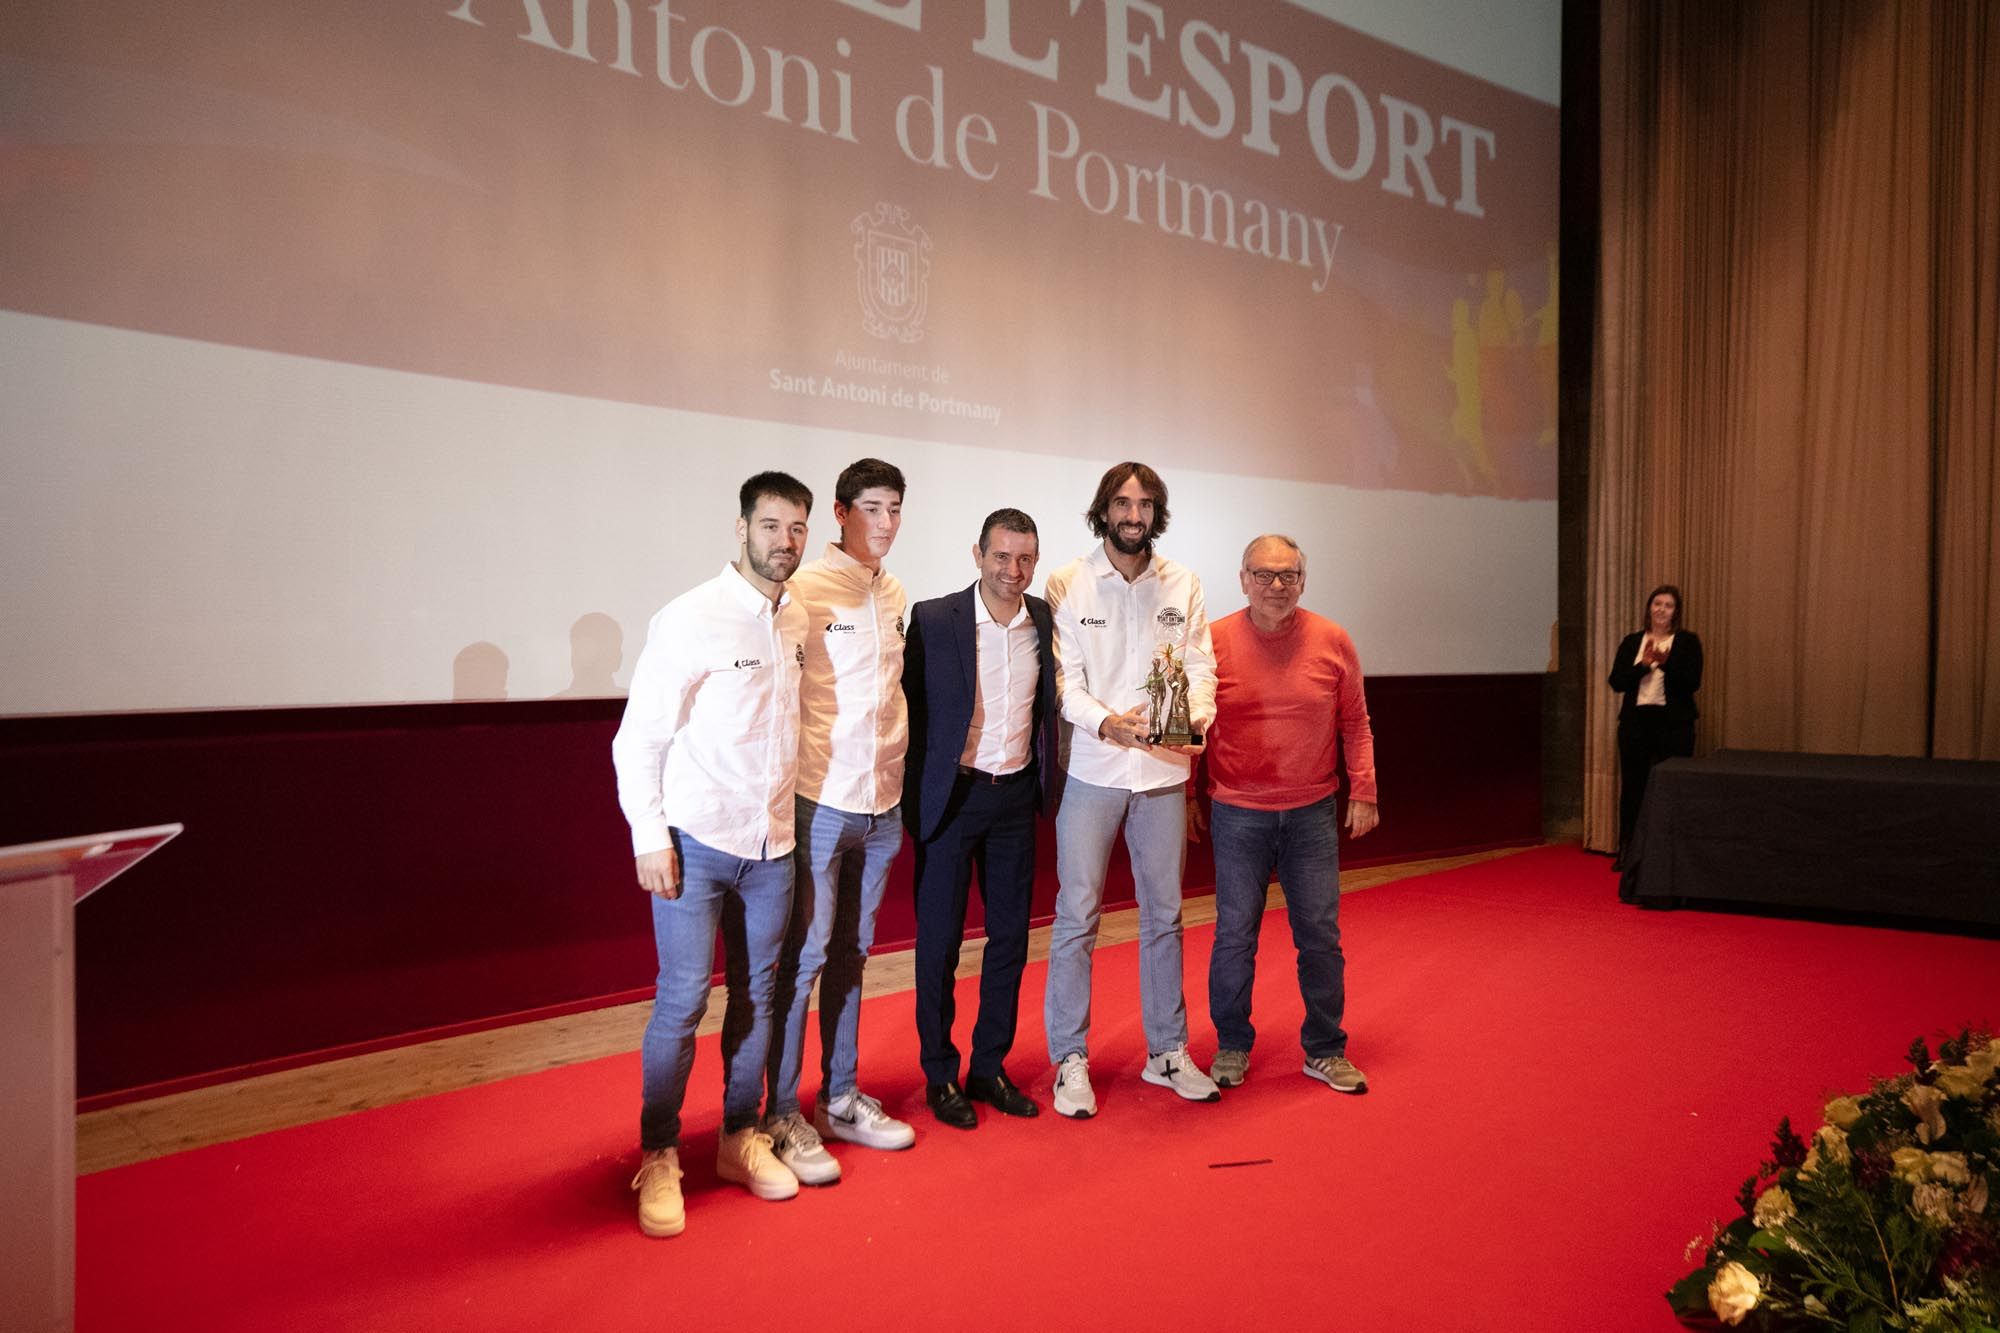 Todas las imágenes de los Premis de l’Esport de Sant Antoni